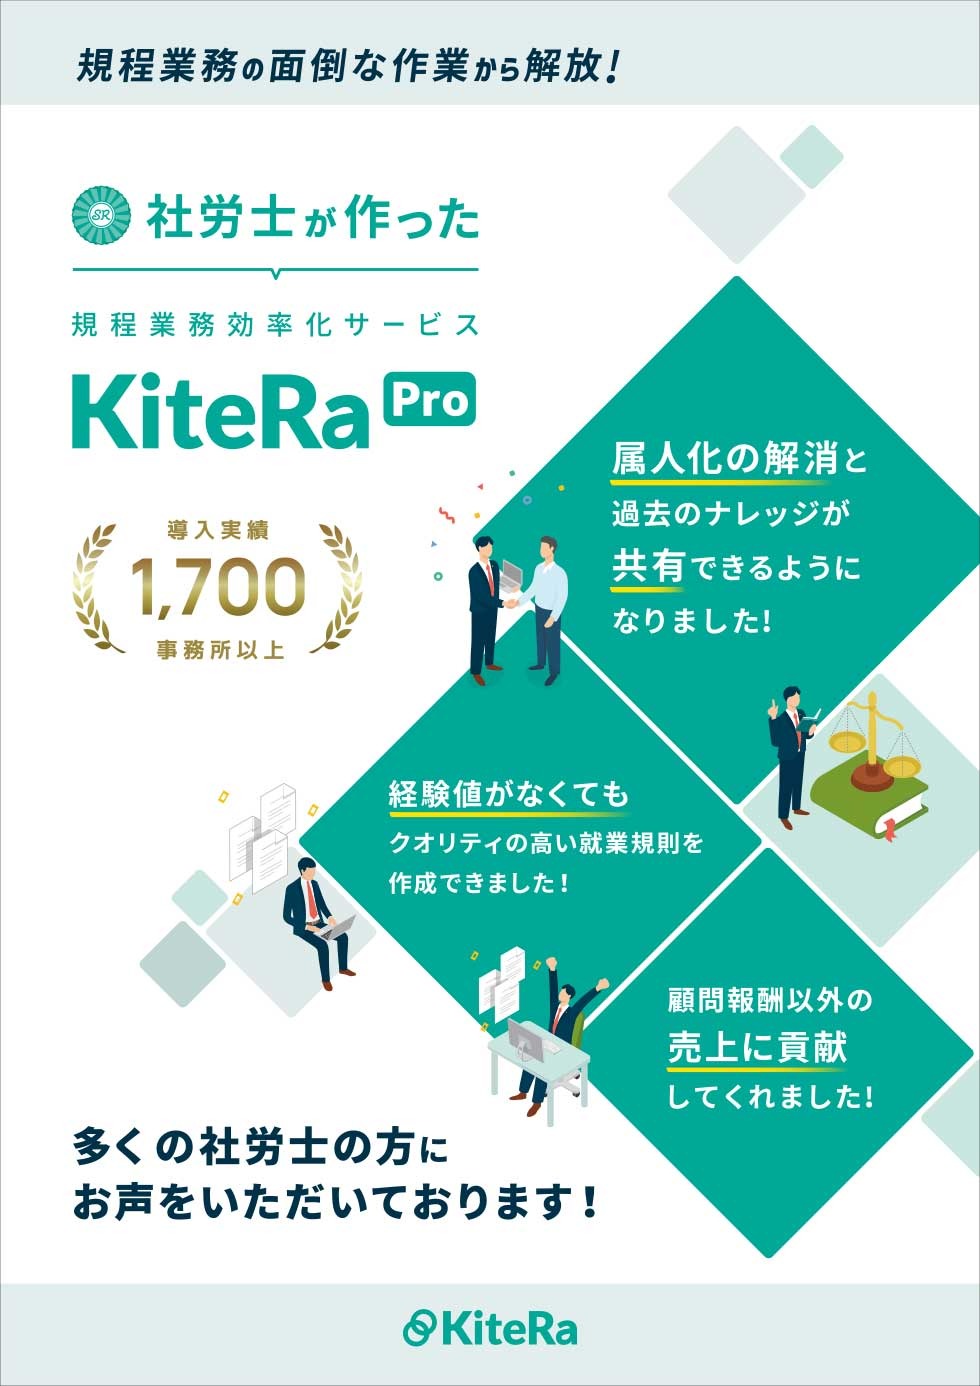 KiteRa Proのご案内